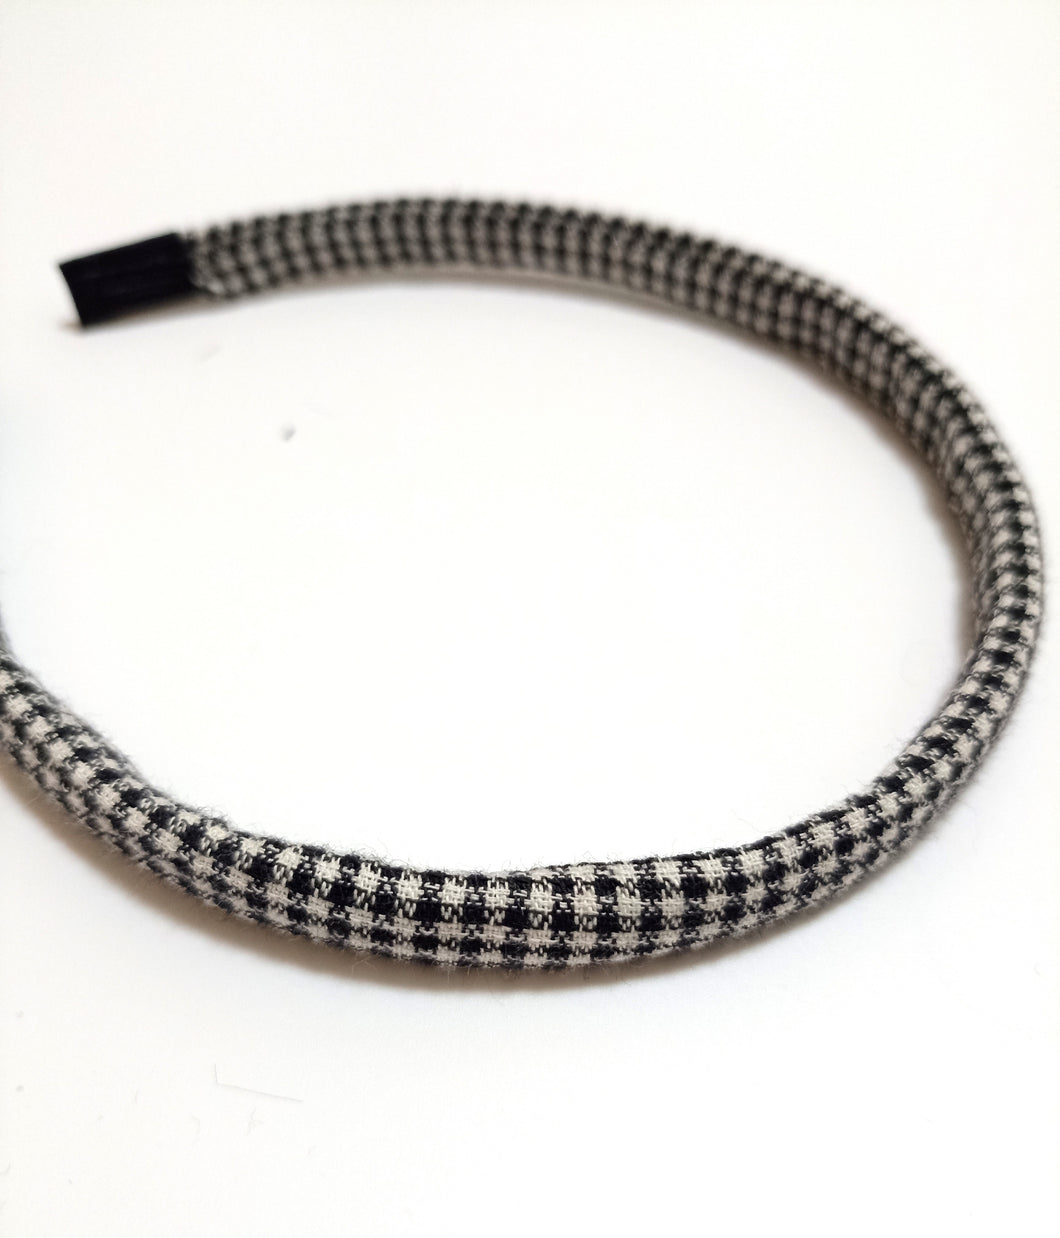 Diadema fina/ Thin headband